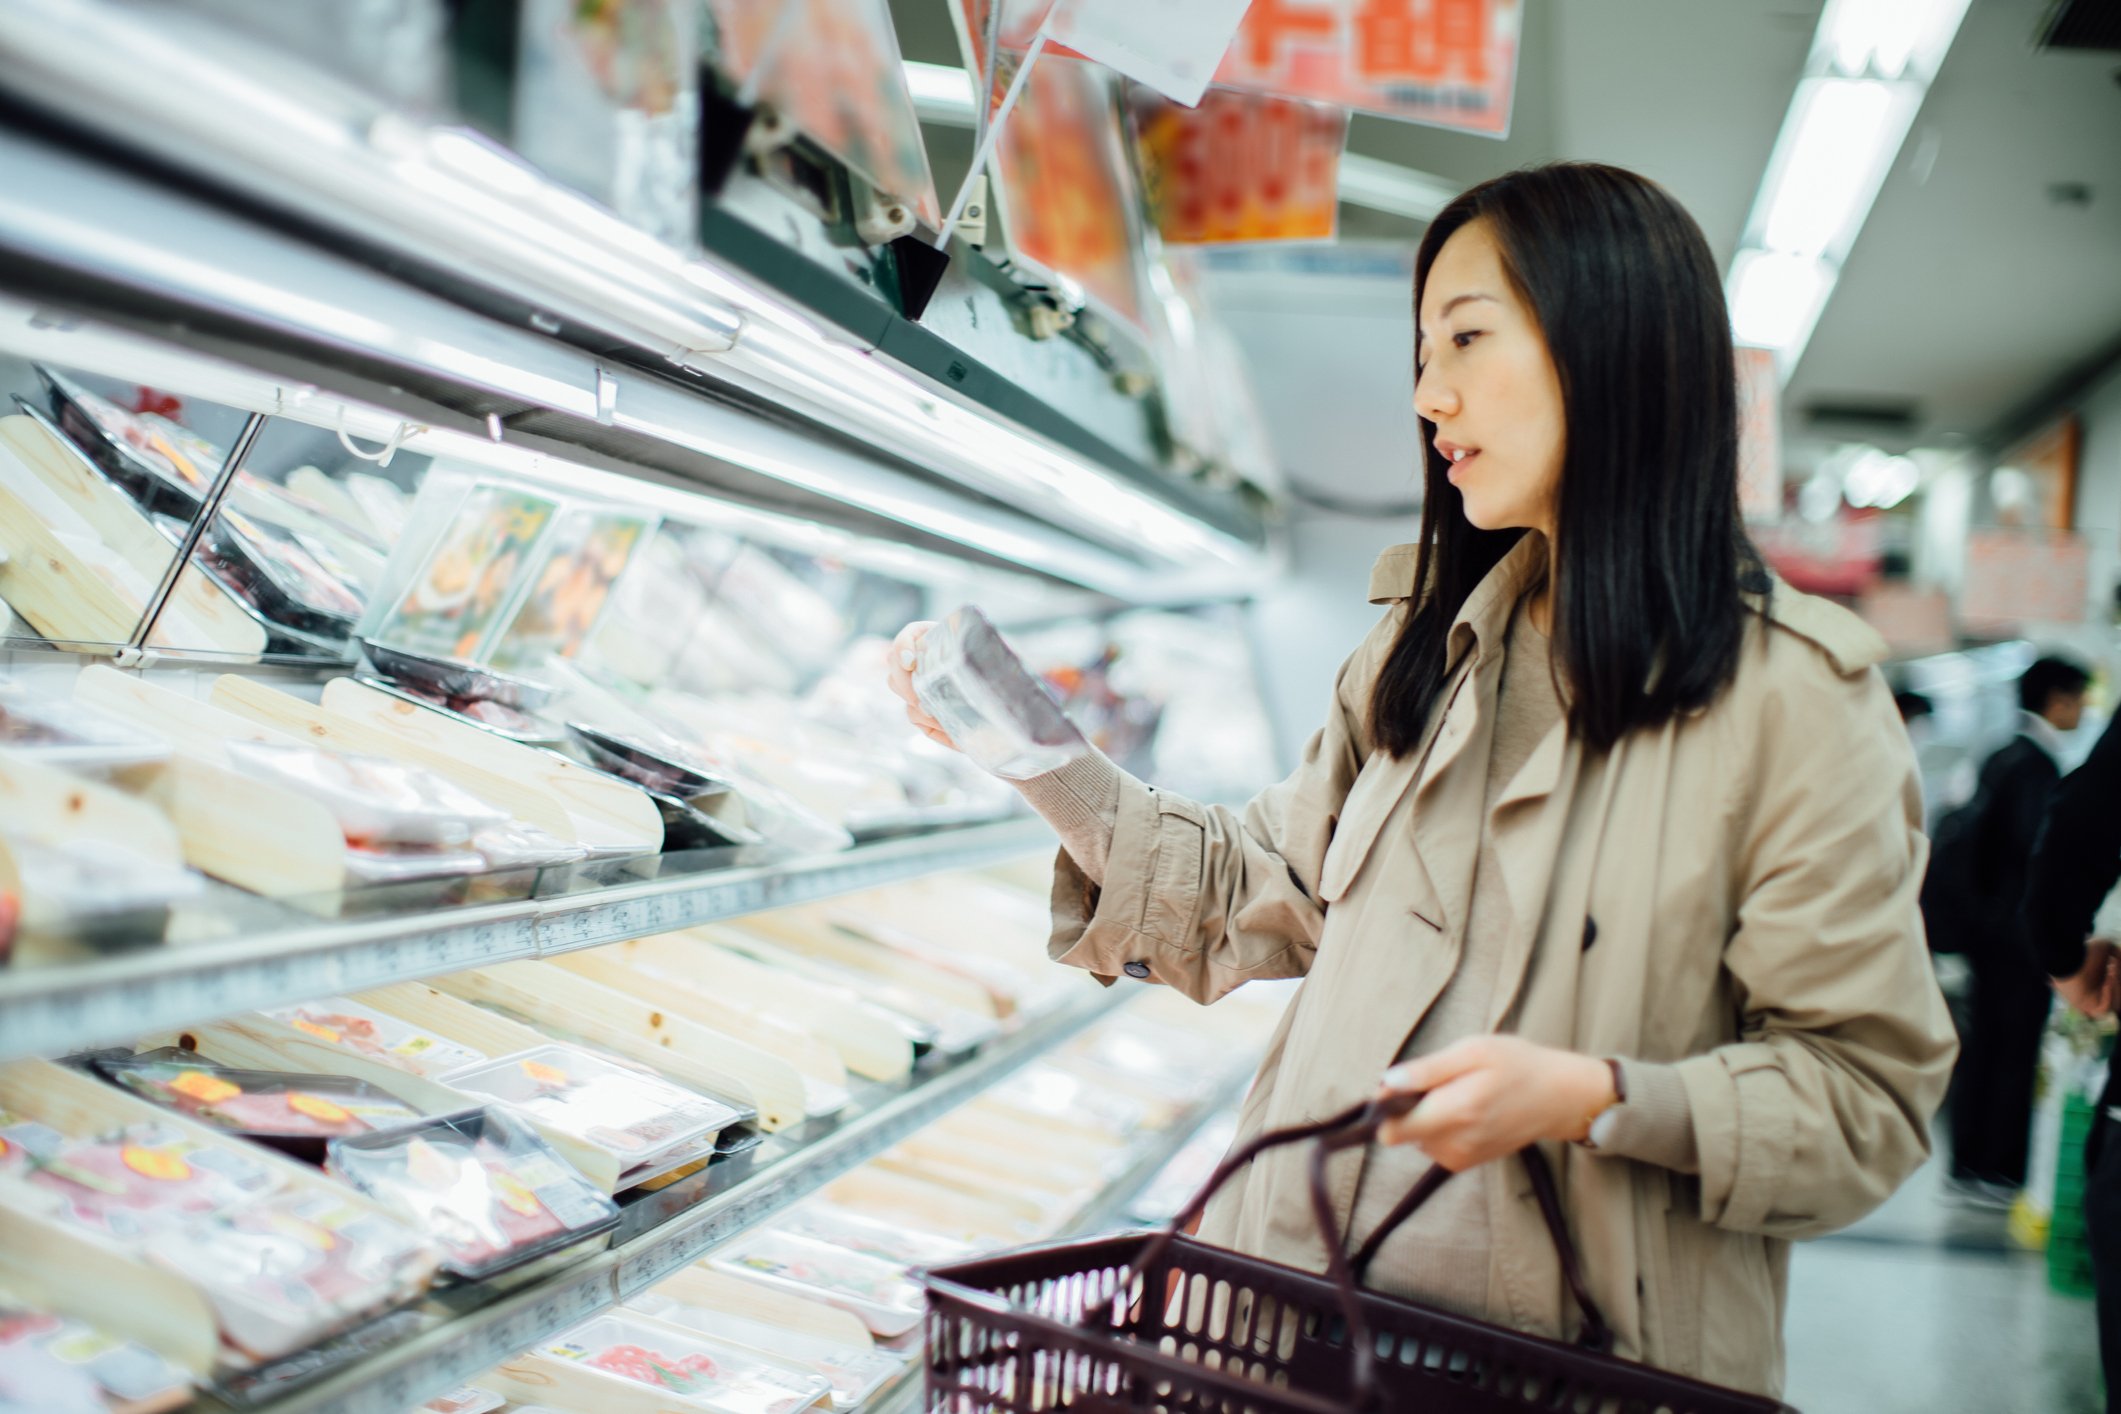 Lebensmitteleinkauf der jungen asiatischen Frau und Auswahl des frischen Geflügels im Supermarkt | Quelle: Getty Images